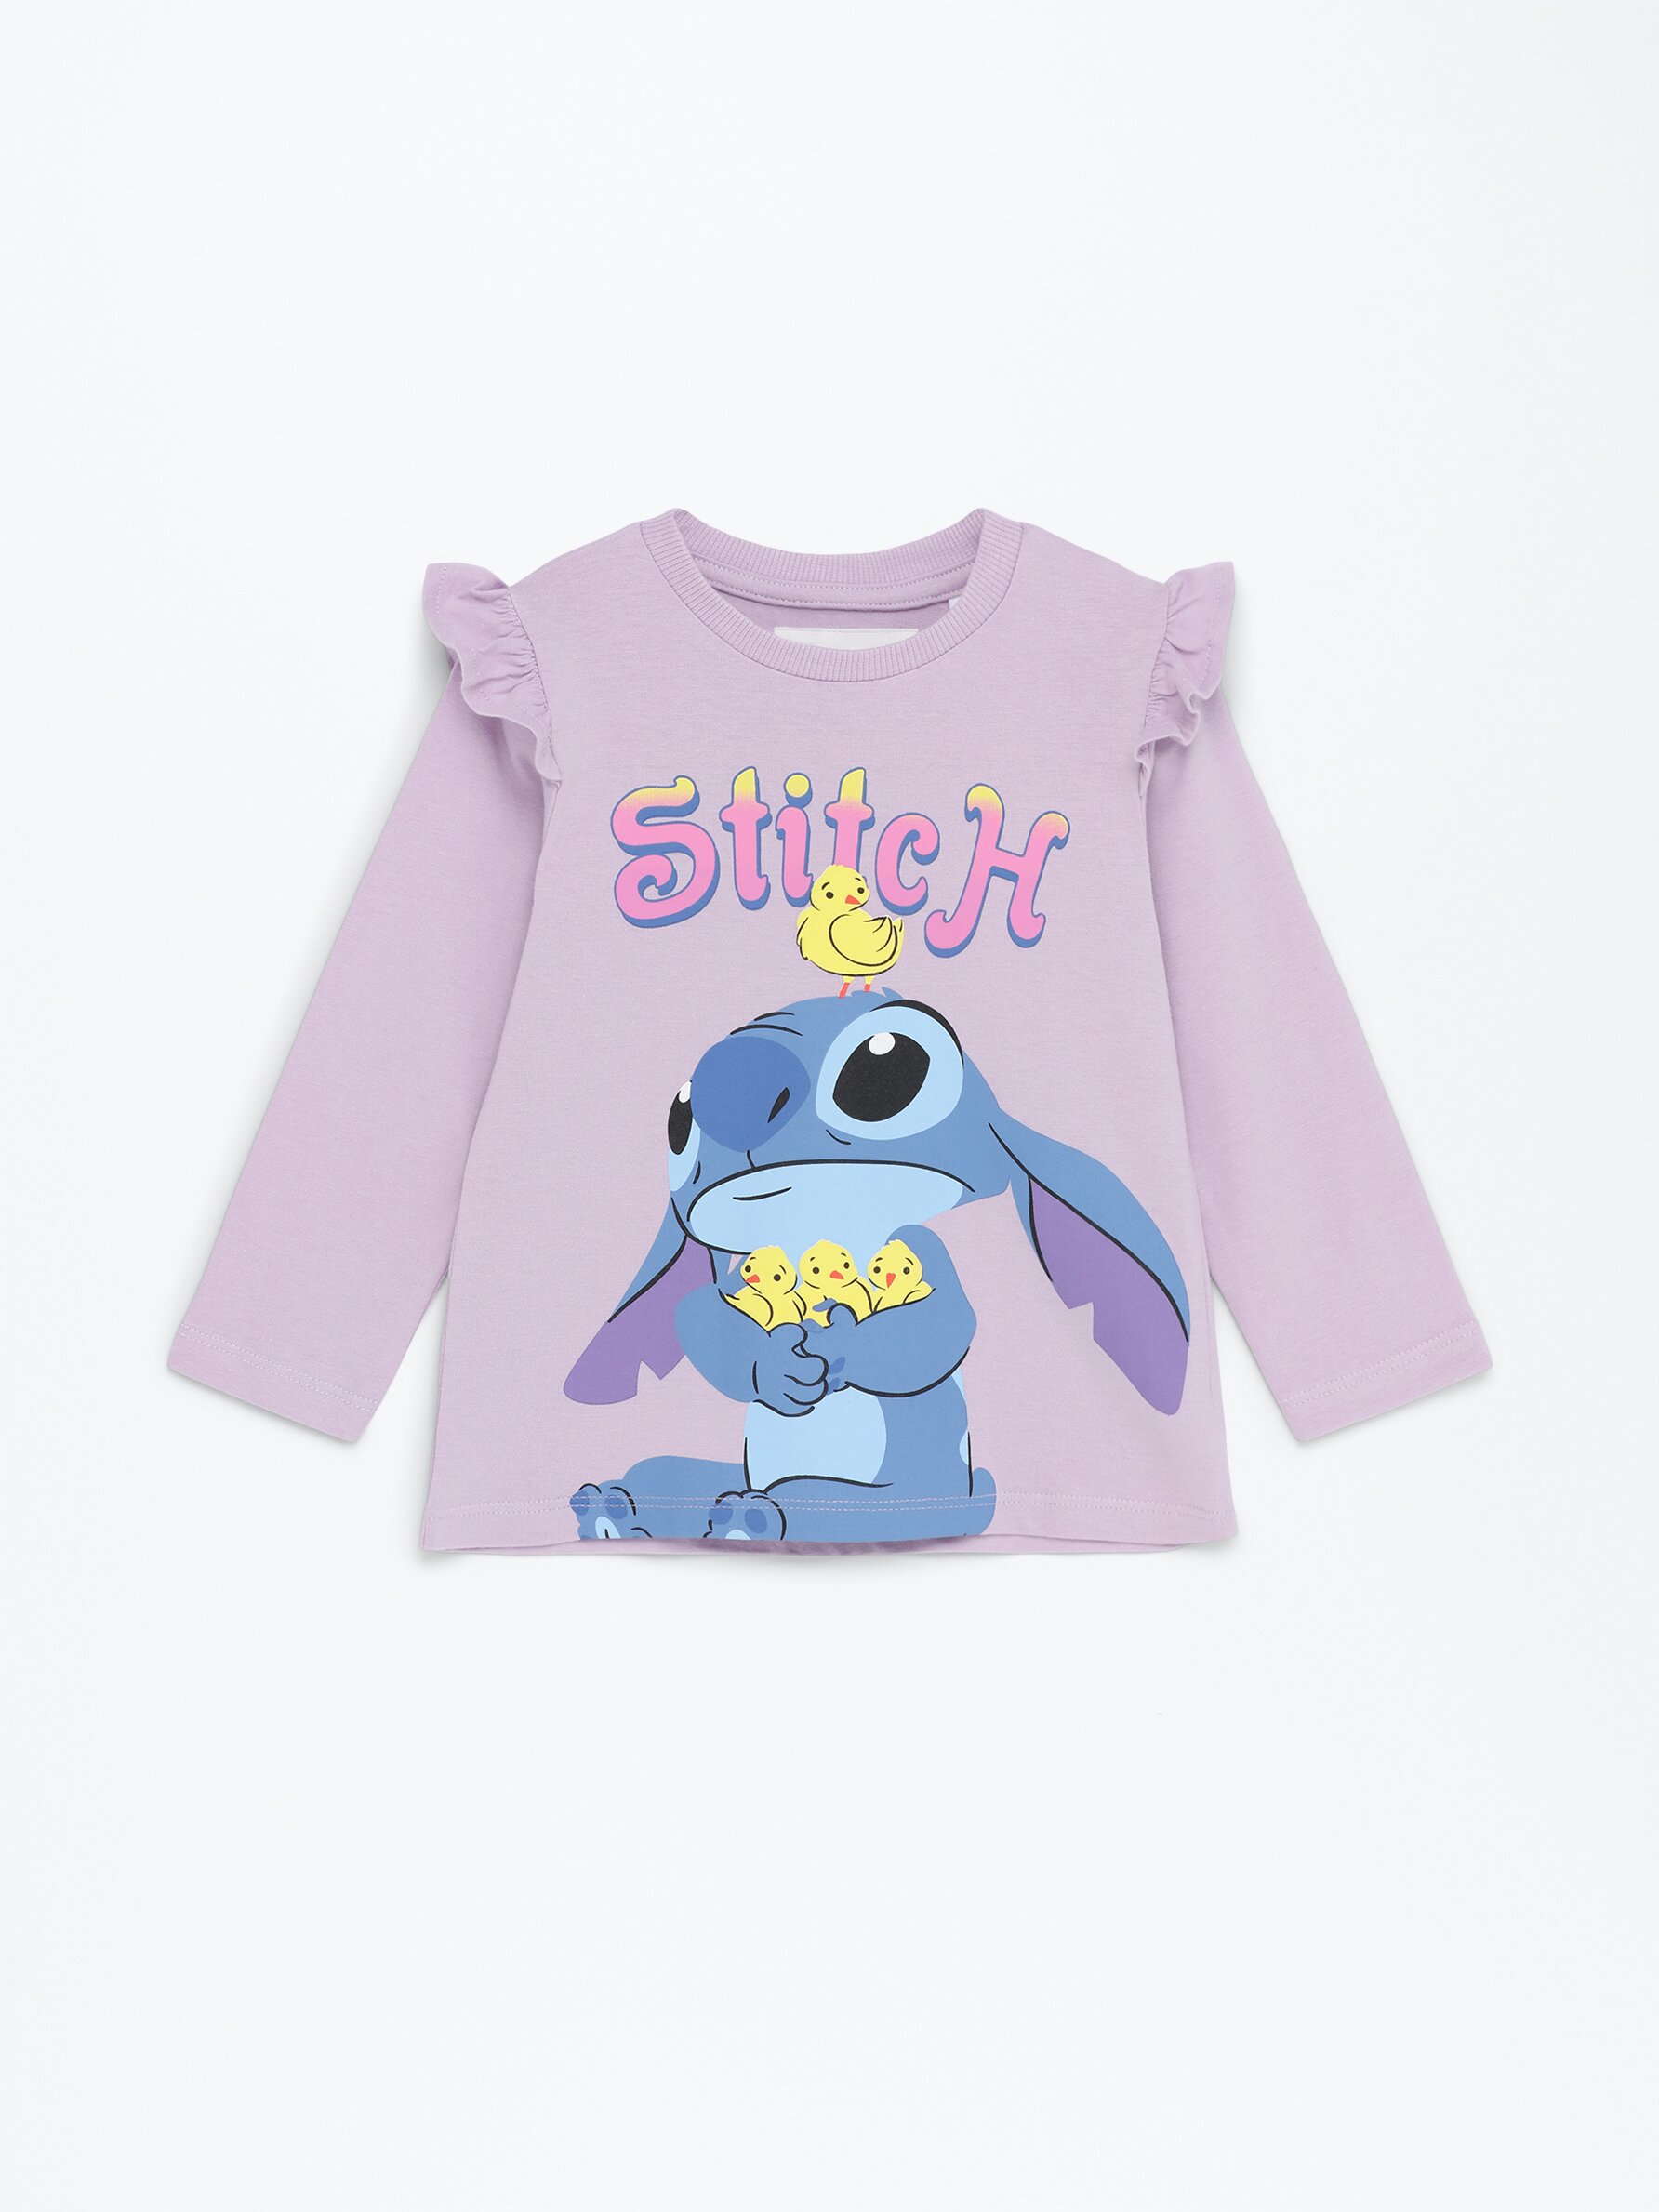 Lilo & Stitch T Shirts & Merchandise